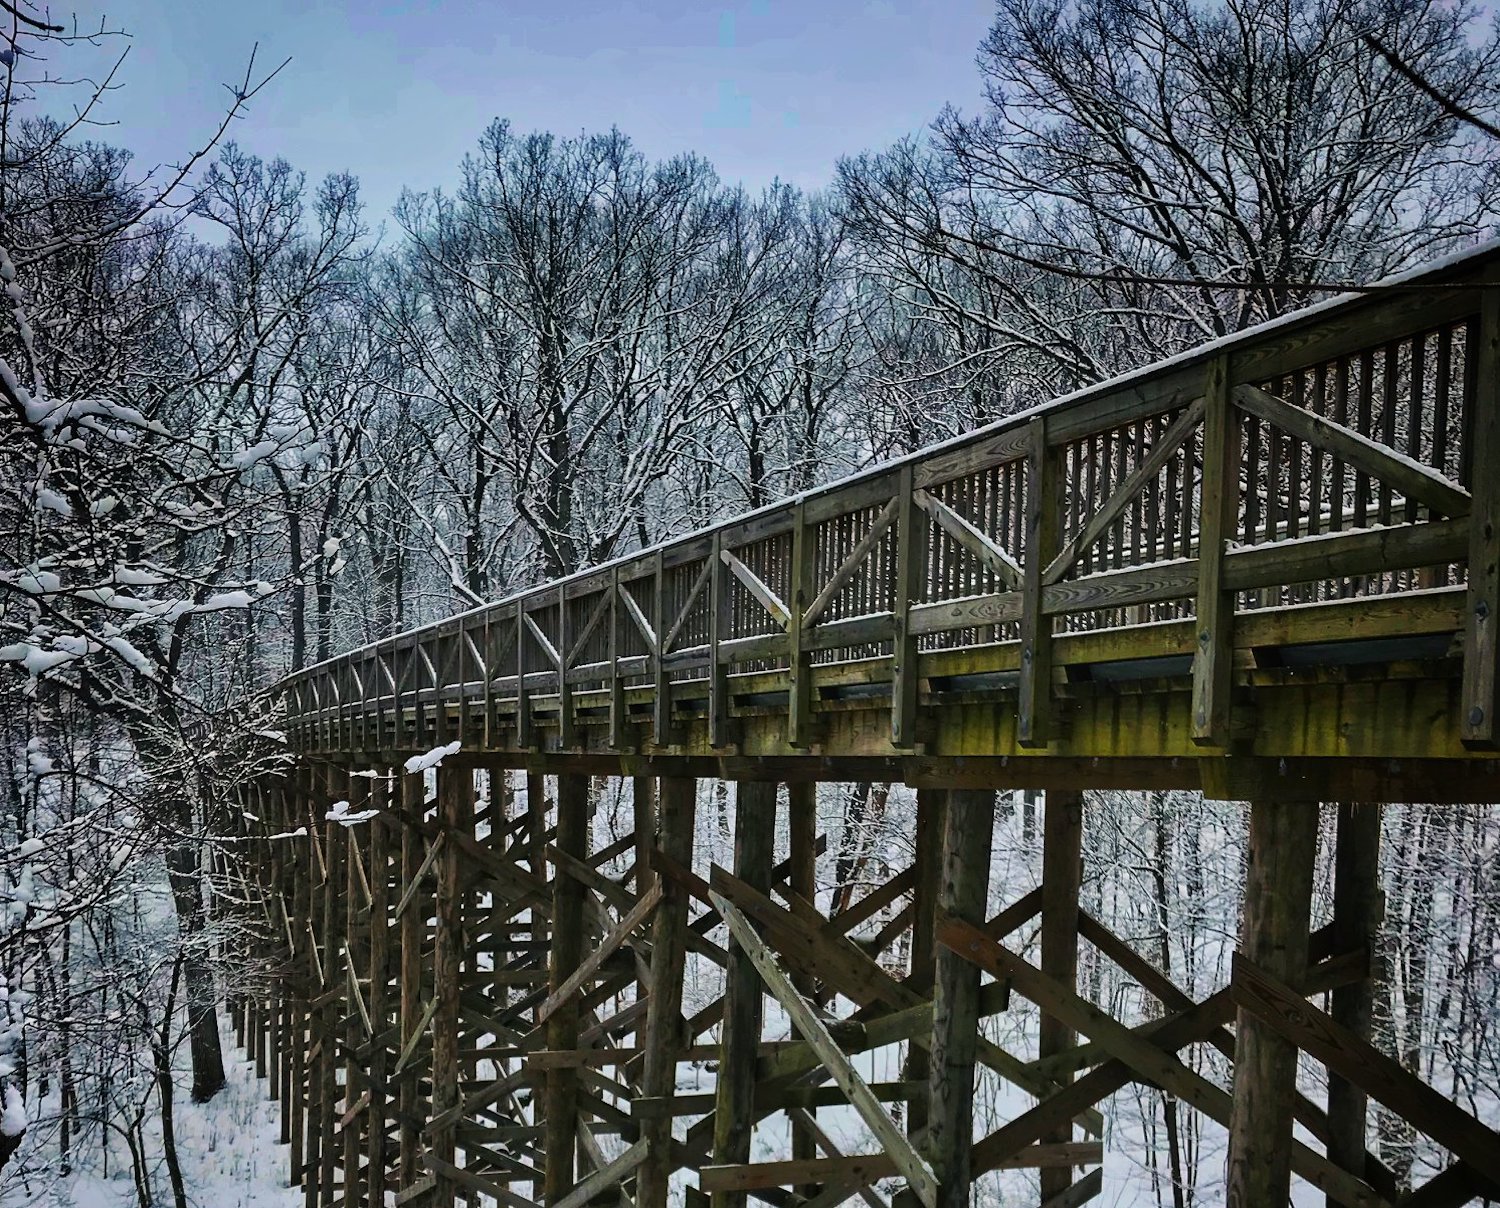 A wooden bridge spanning a ravine in winter.